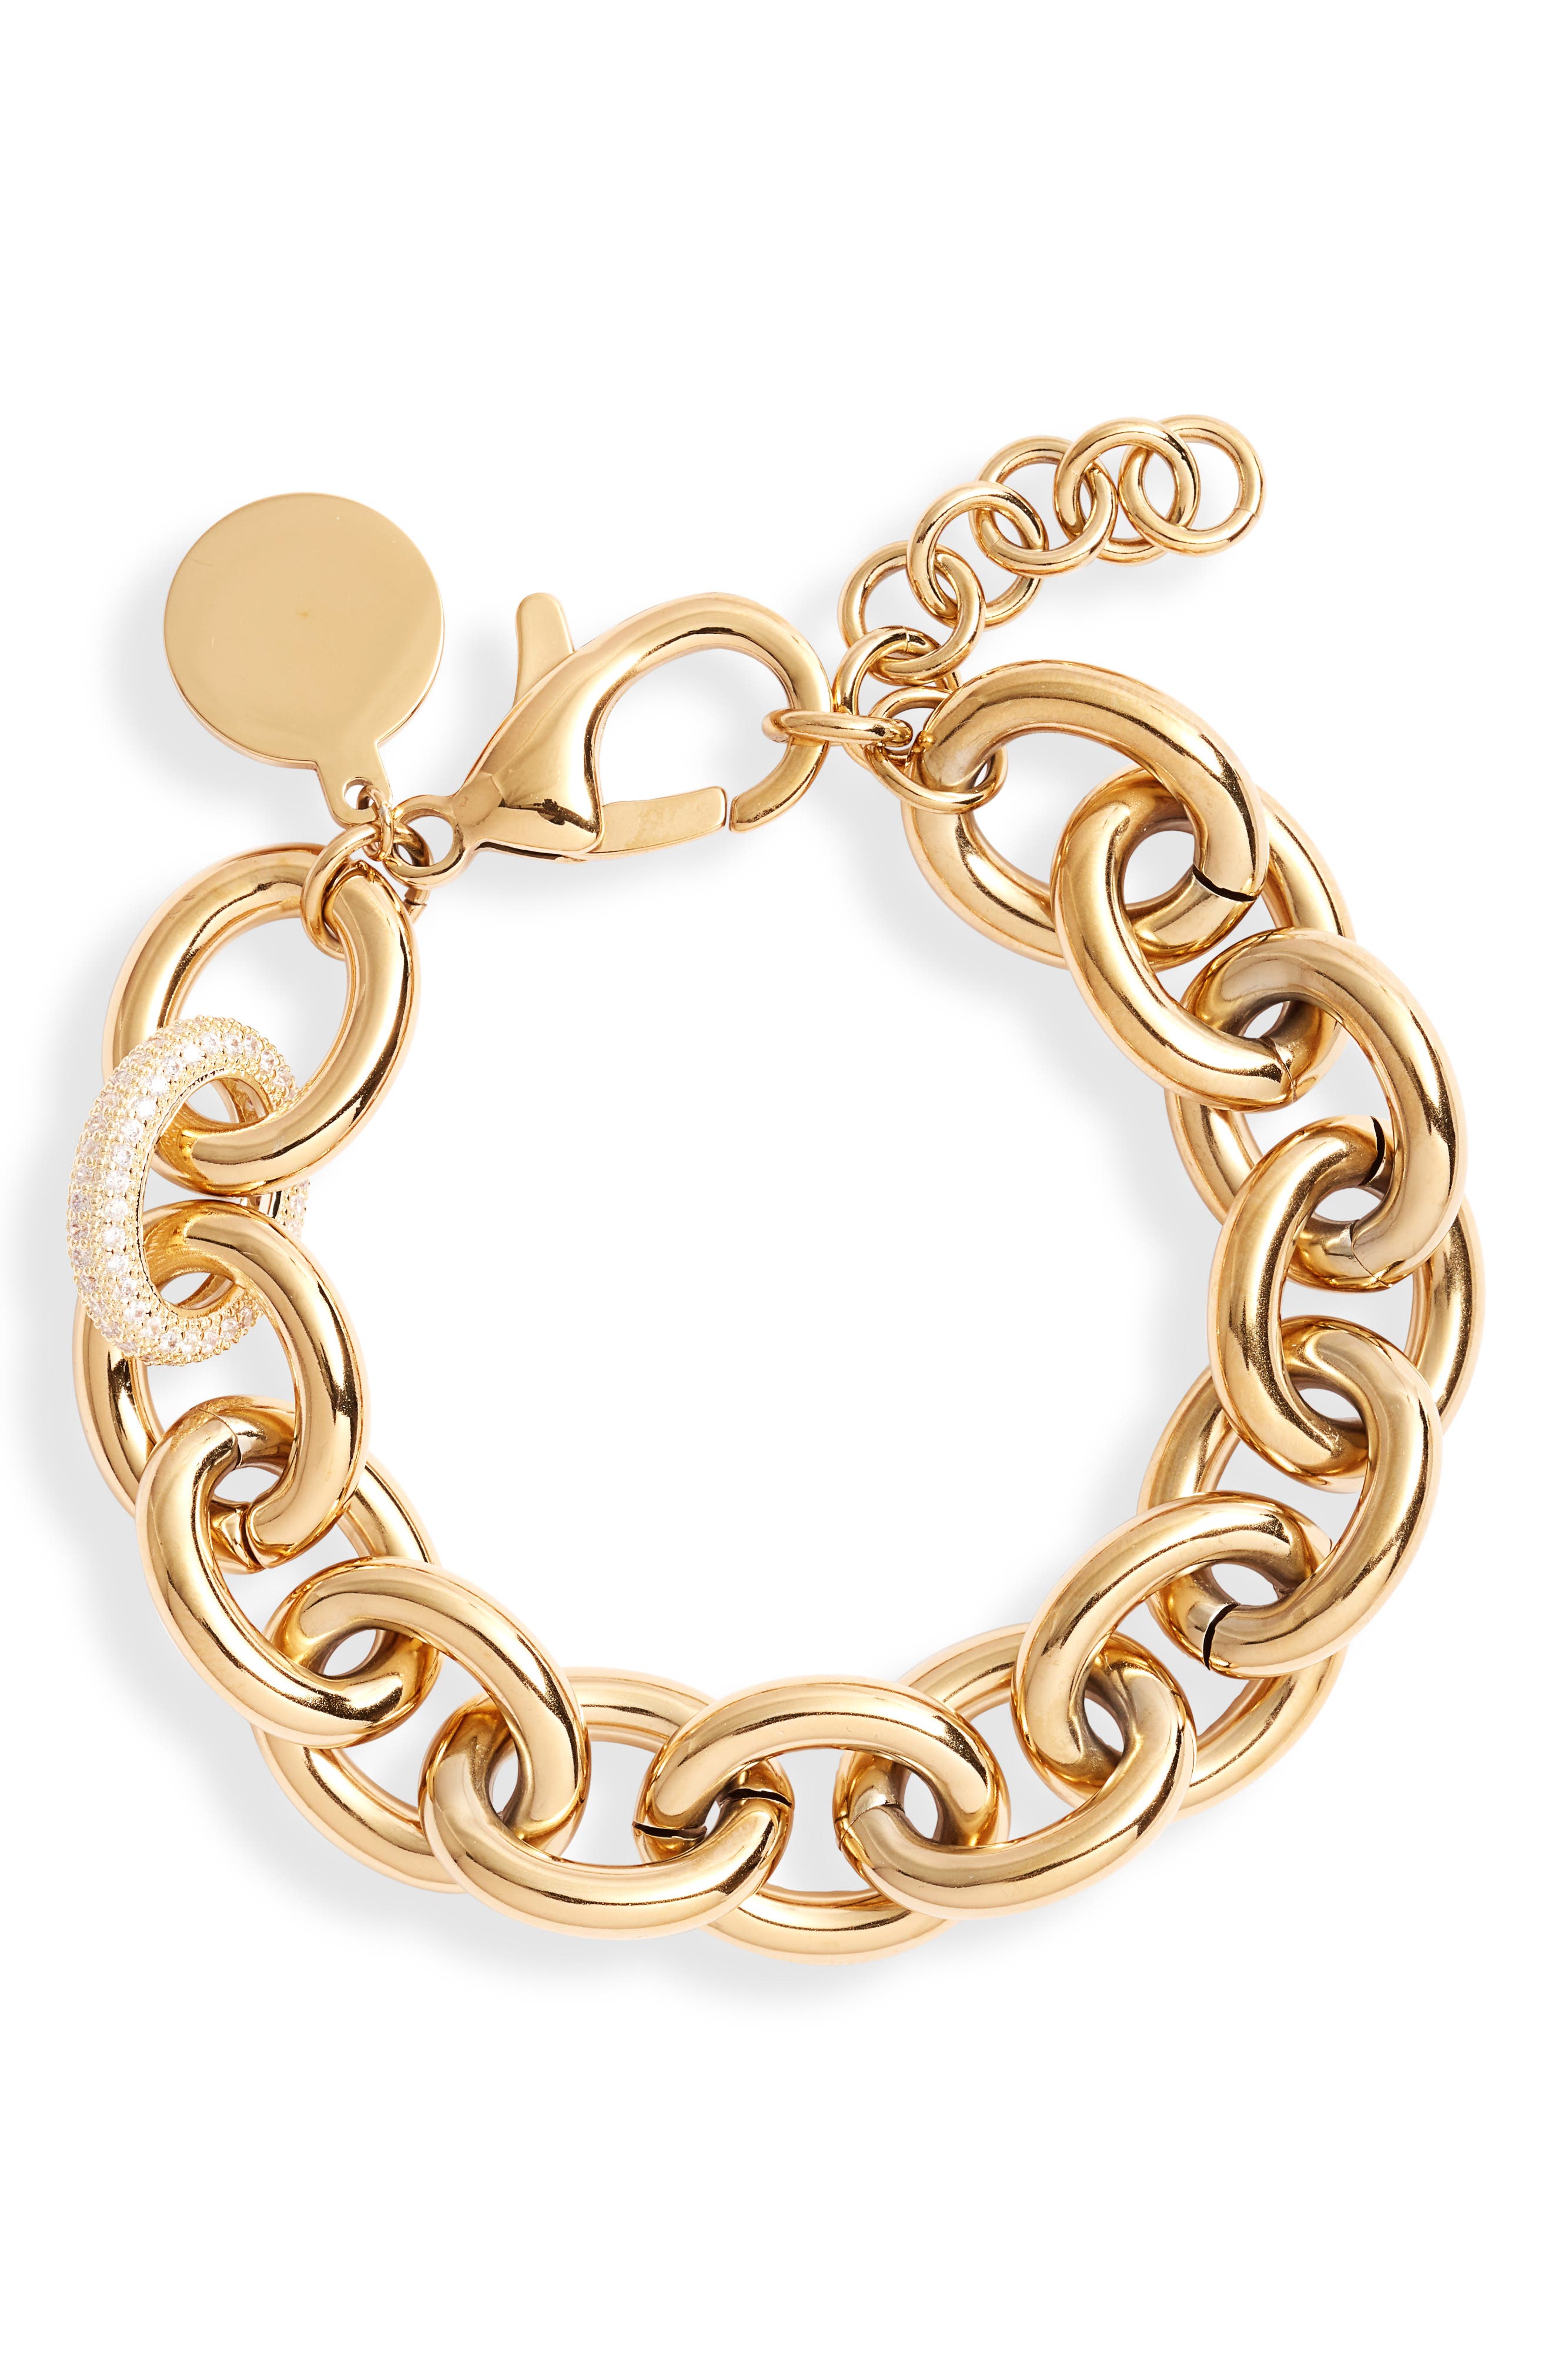 Women's Zirconia Stainless Steel Bangle Bracelet Wristband Jewelry Size 7" 